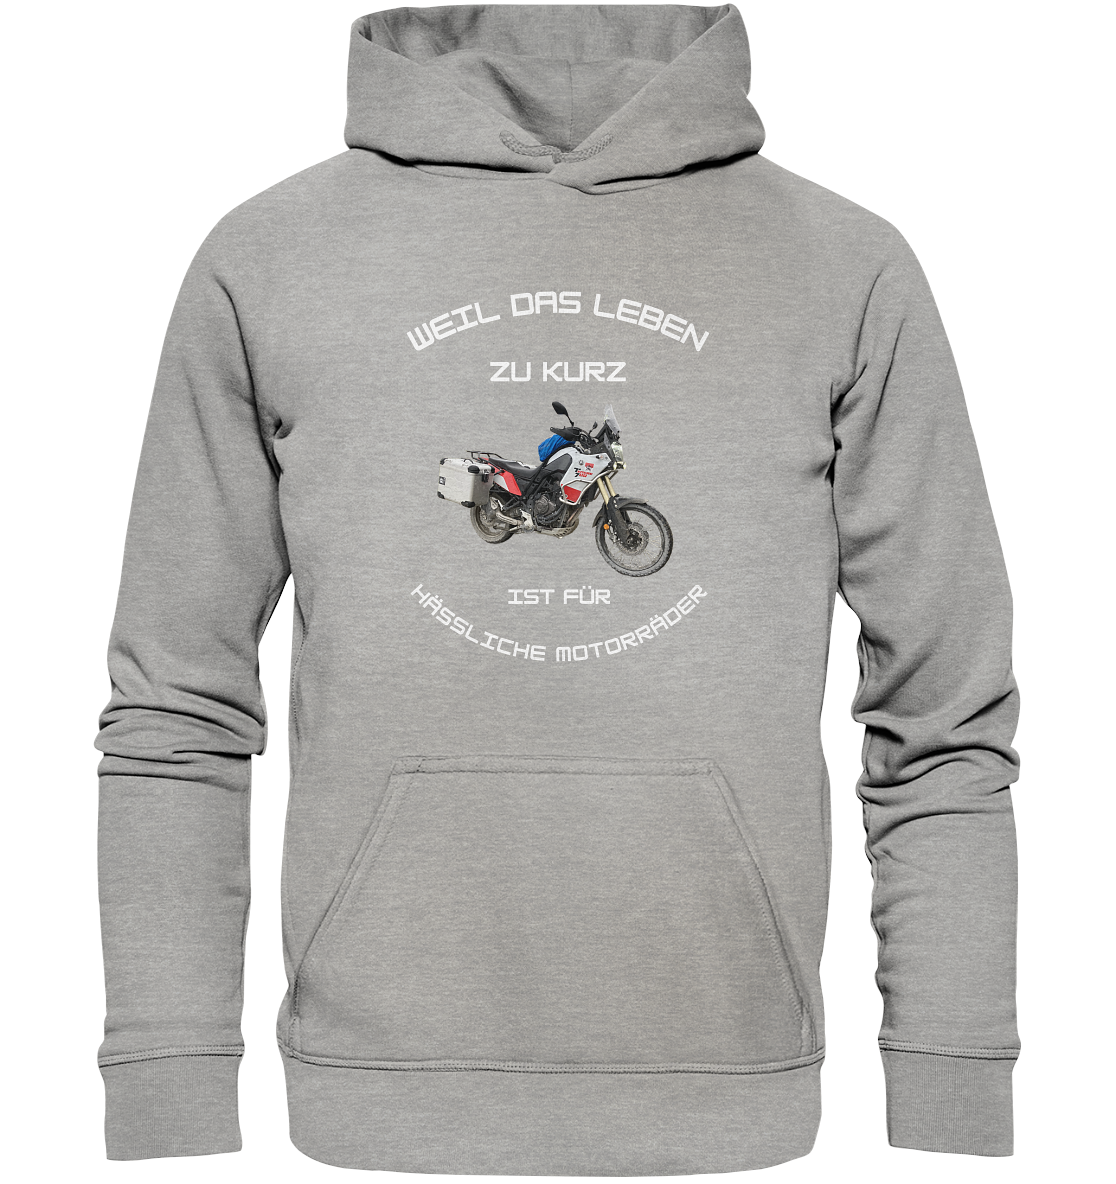 "Weil das Leben zu kurz ist für hässliche Motorräder" _ für Tim | individualisierter Hoodie mit Foto-Druck und Motorradspruch in hellem Design